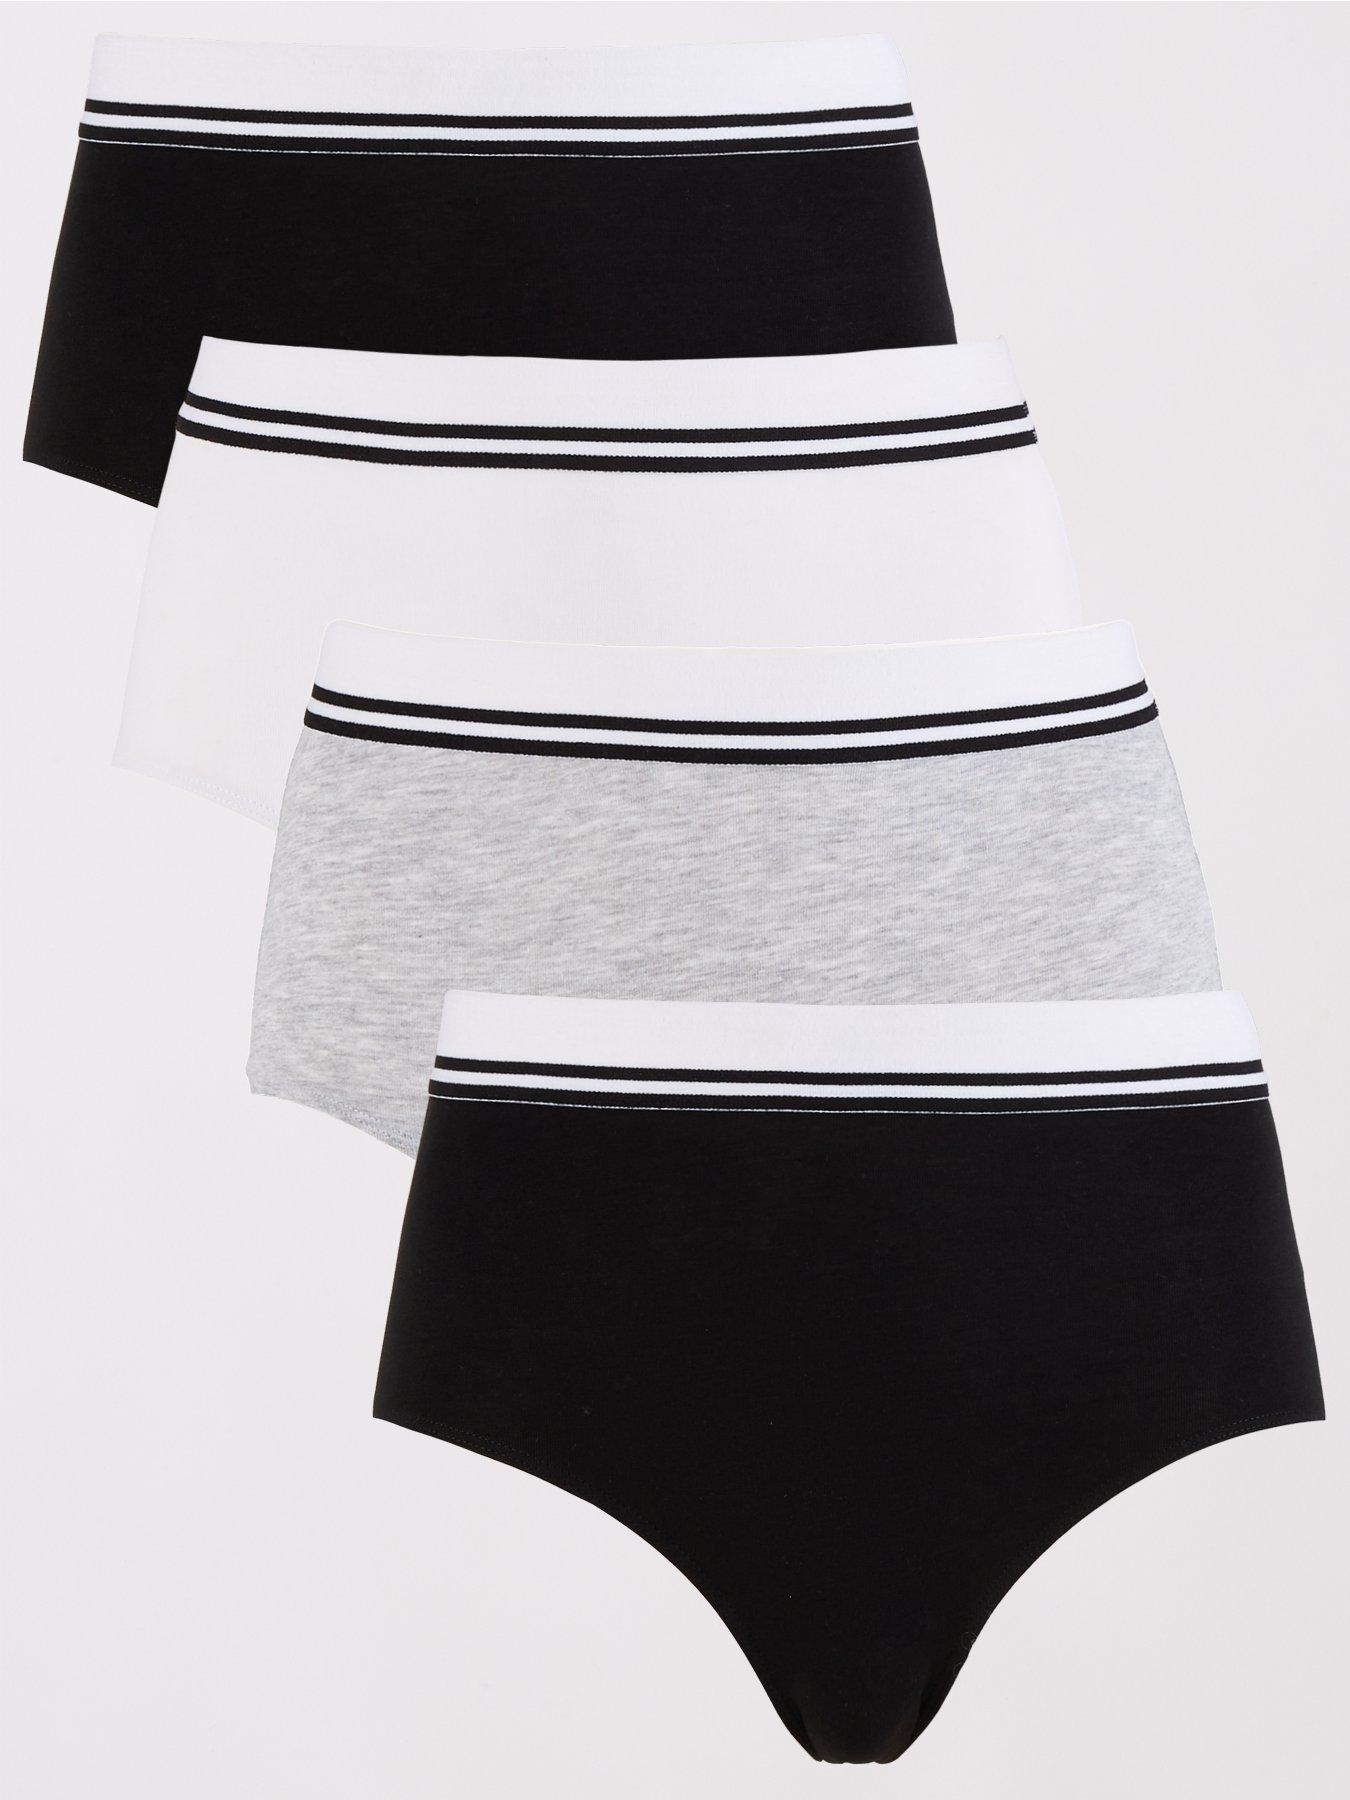 Joe Boxer Underwear Womens 6-pack Thong Panties Assorted Navy